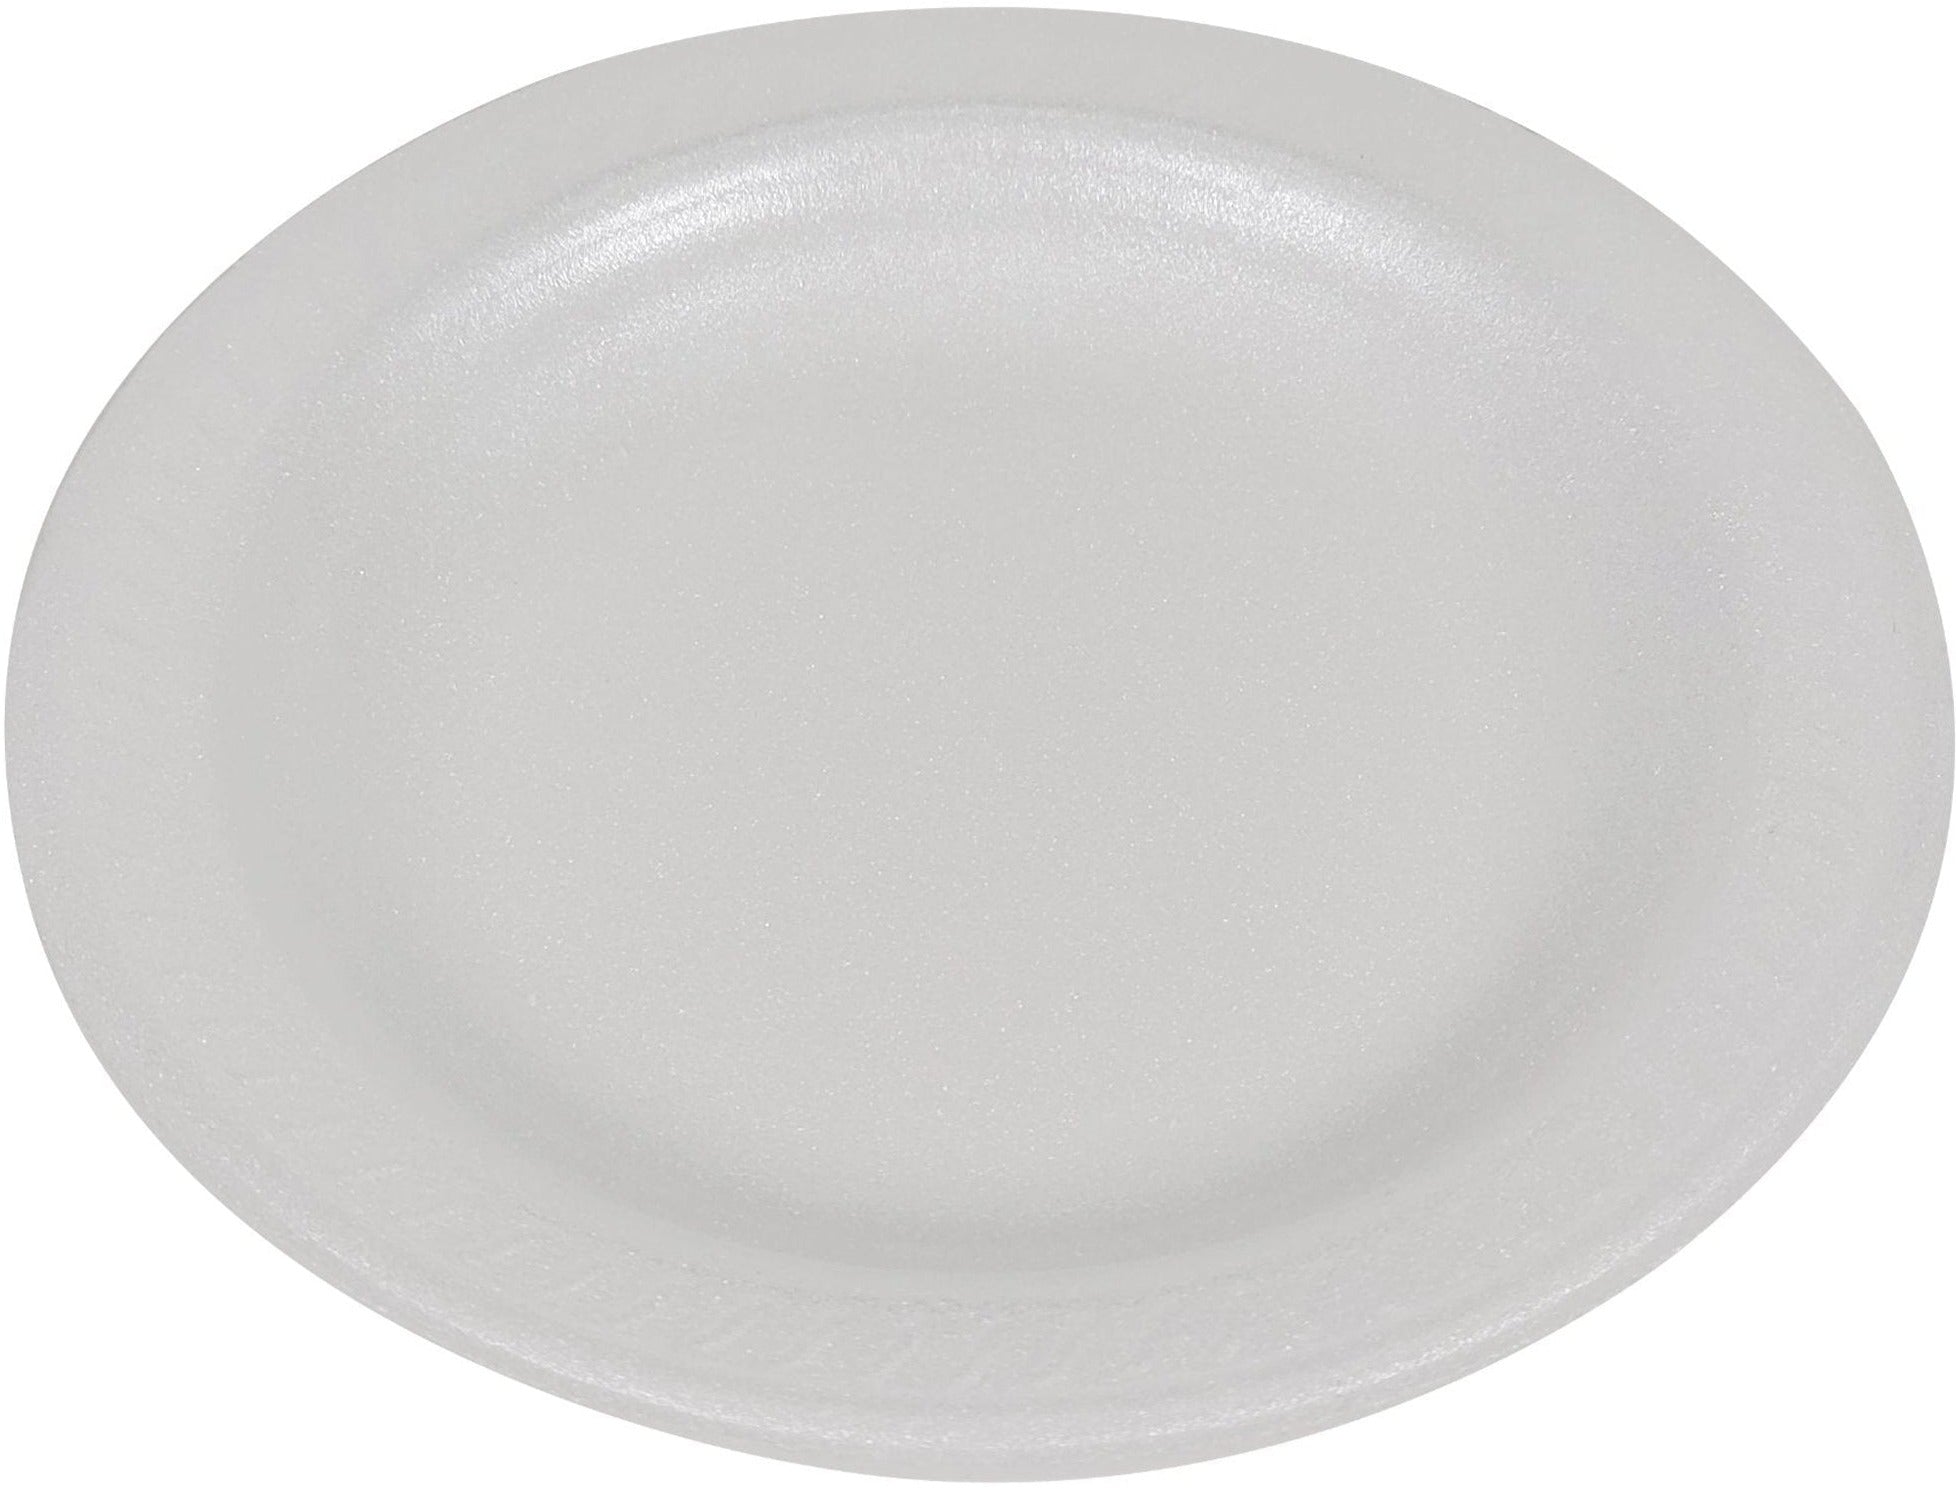 Disposable Foam Plates